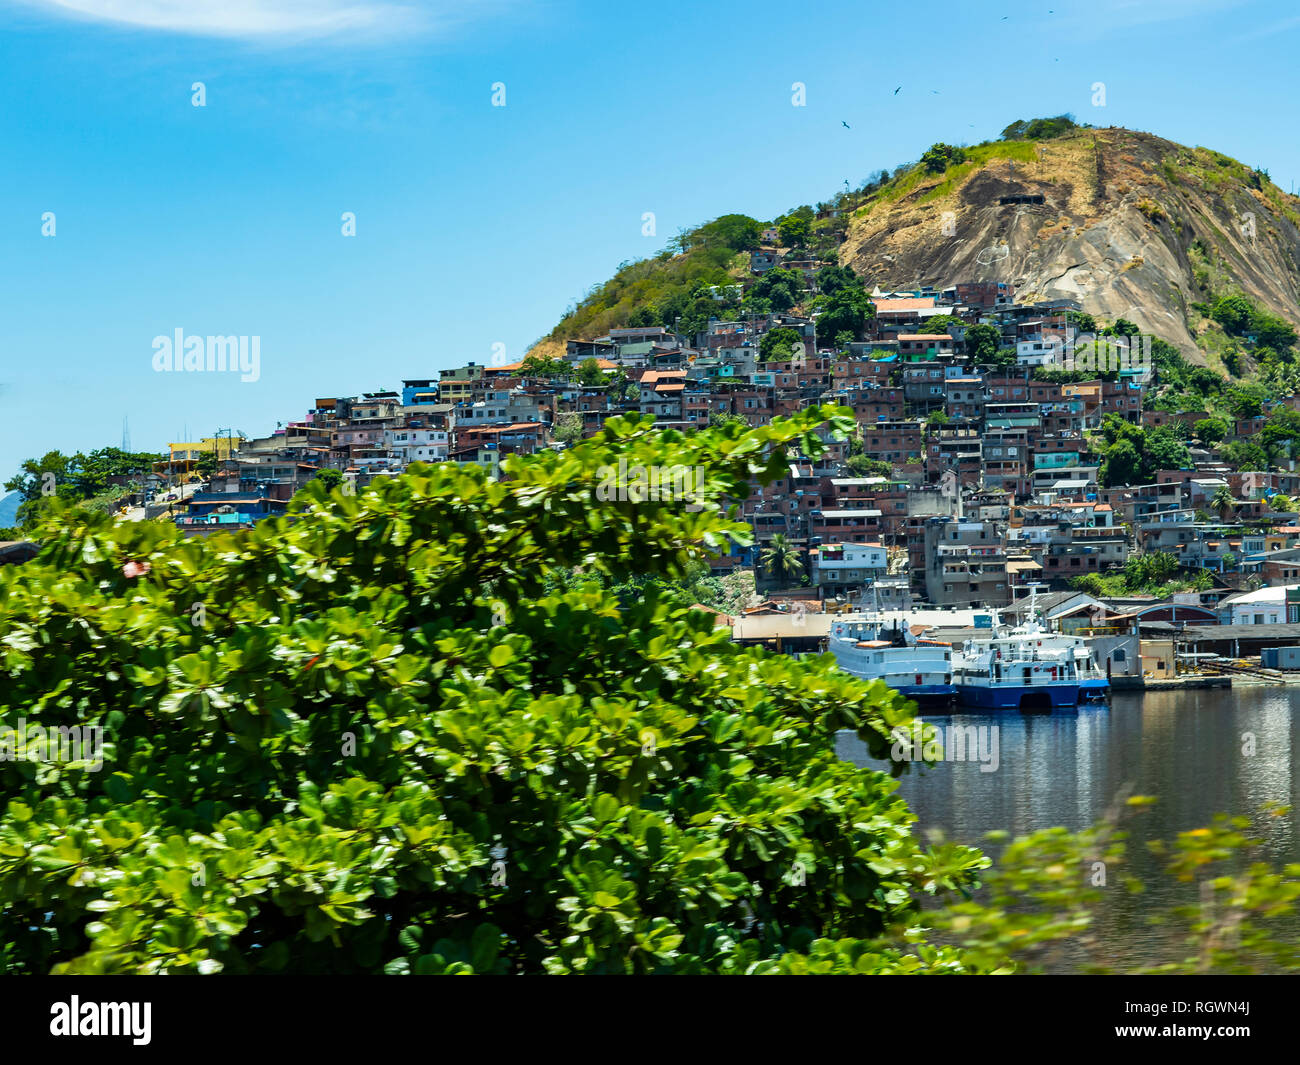 Los barrios marginales del mundo. Las favelas de Brasil. Tugurio en la ciudad de Niterói, Penha Hill de los barrios de tugurios. Foto de stock